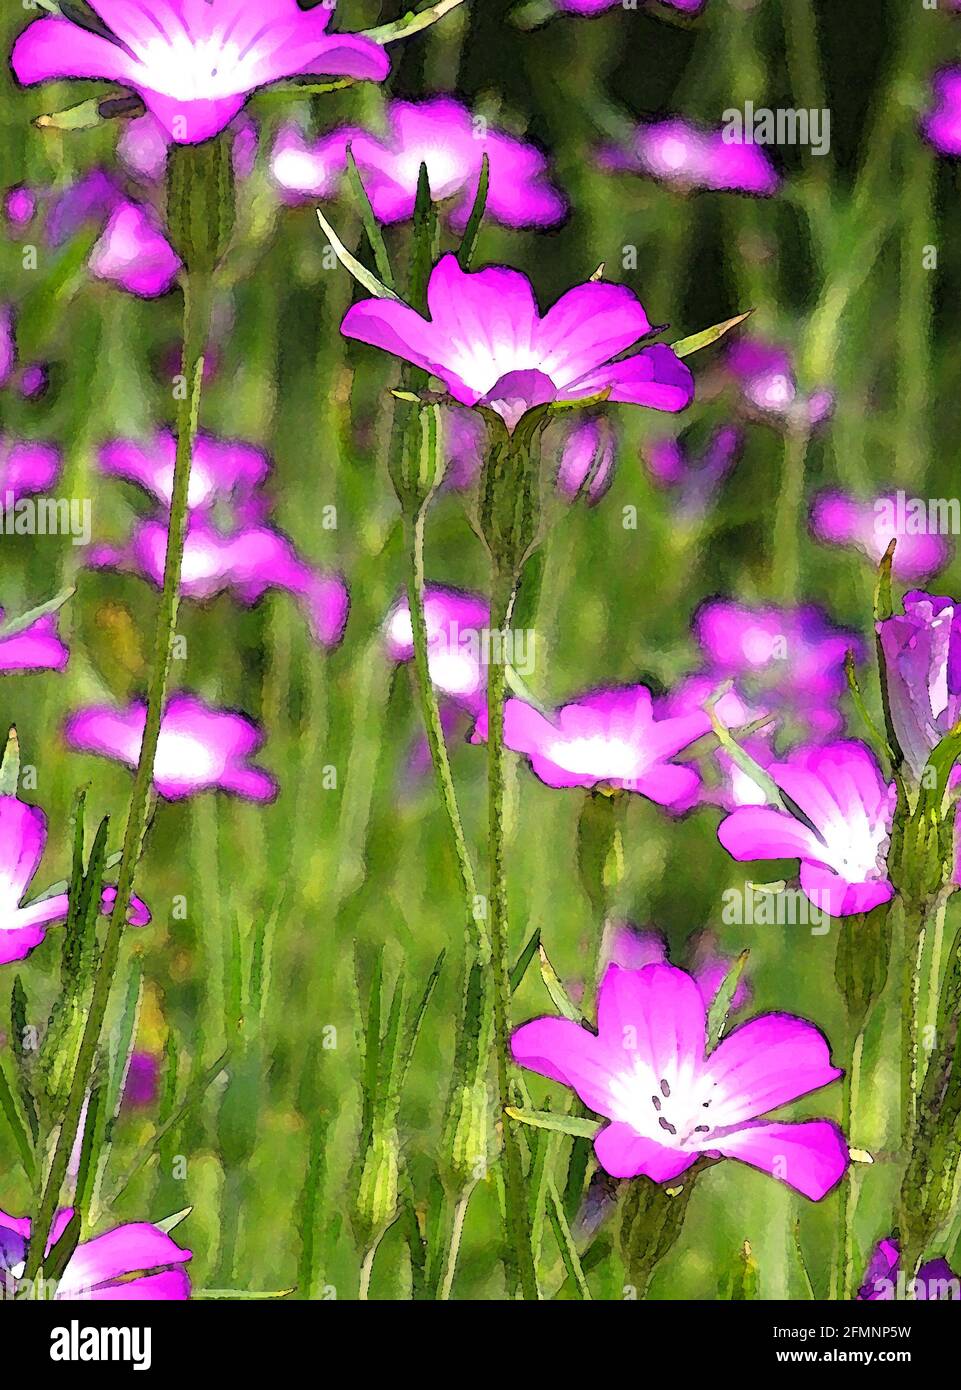 Mais-Hahn (Agrostemma githago) eine von 42 ikonischen Bildern von englischen Gartenblumen, Wildblumen und ländlichen Landschaften. Stockfoto